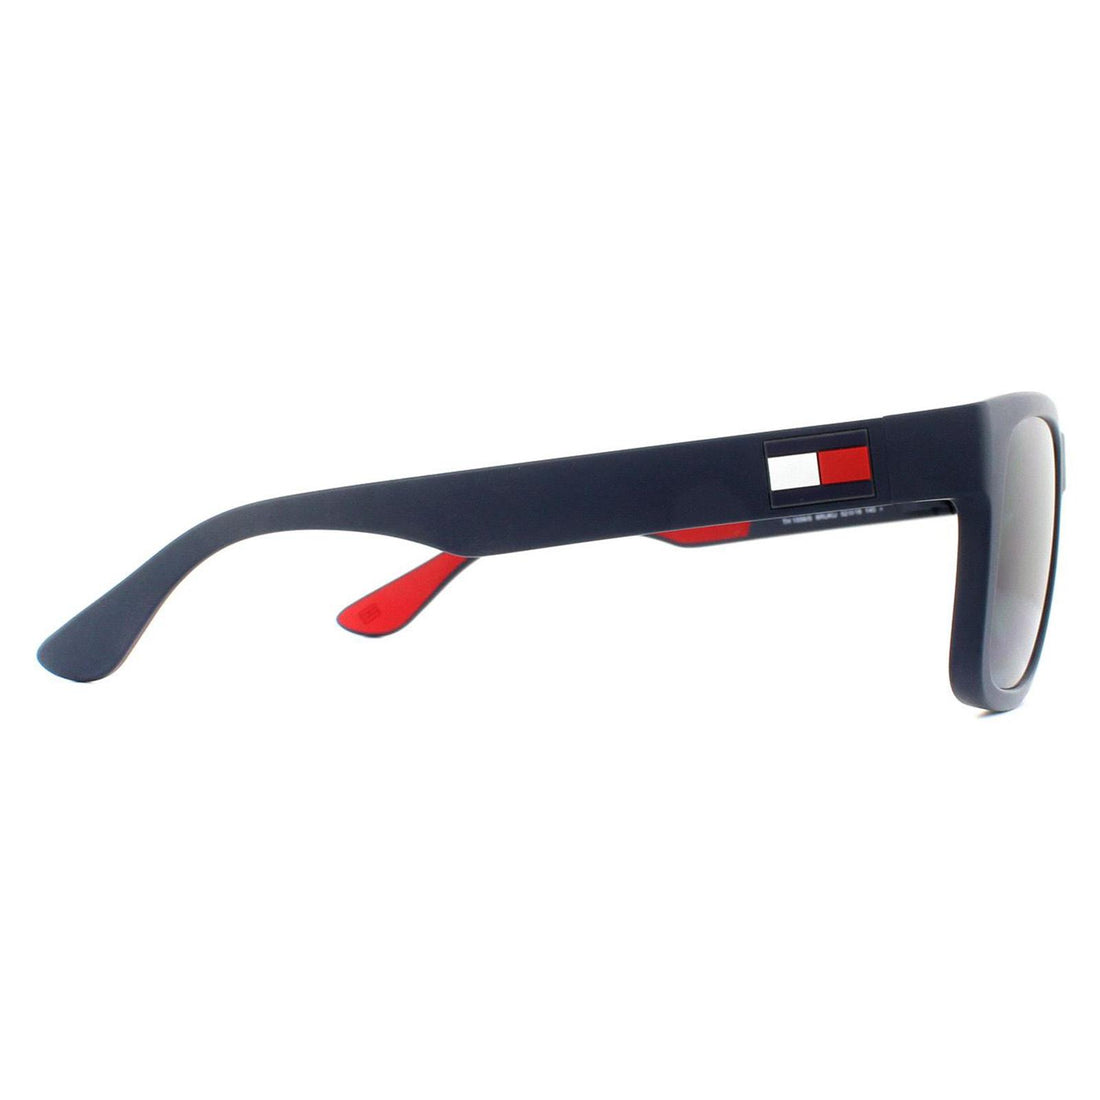 Tommy Hilfiger Sunglasses TH 1556/S 8RU KU Blue Blue 53mm